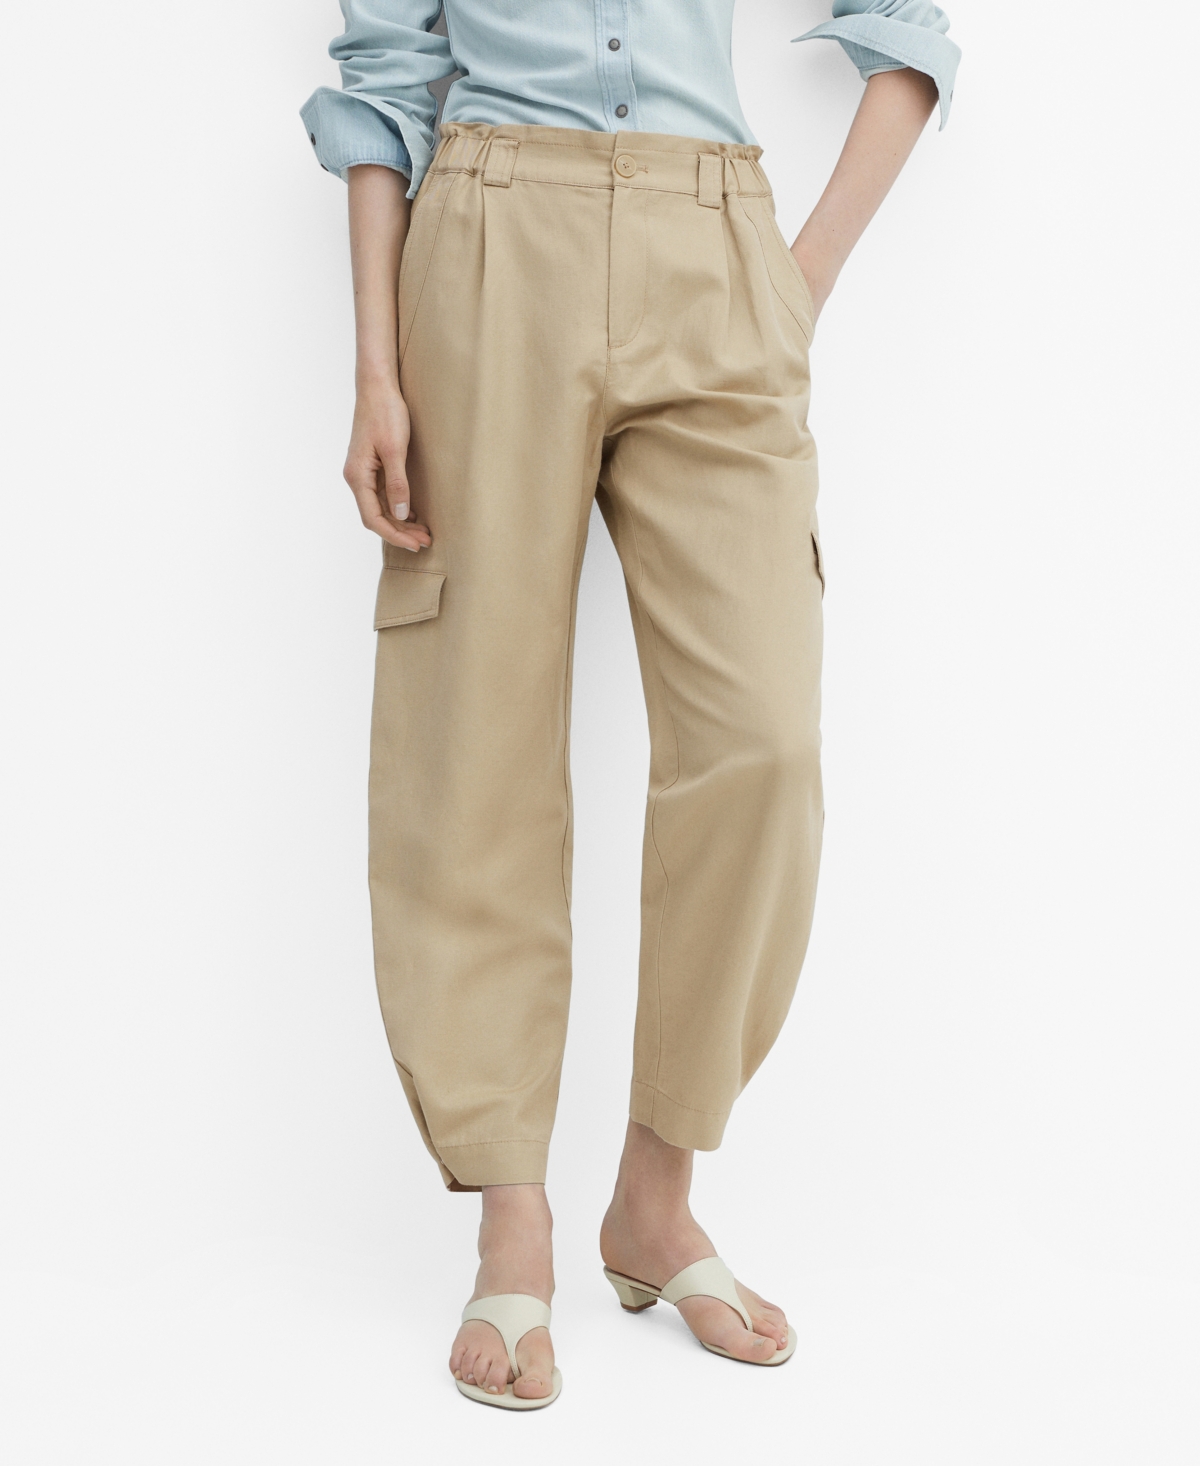 Women's Linen Cargo Pants - Light Beig